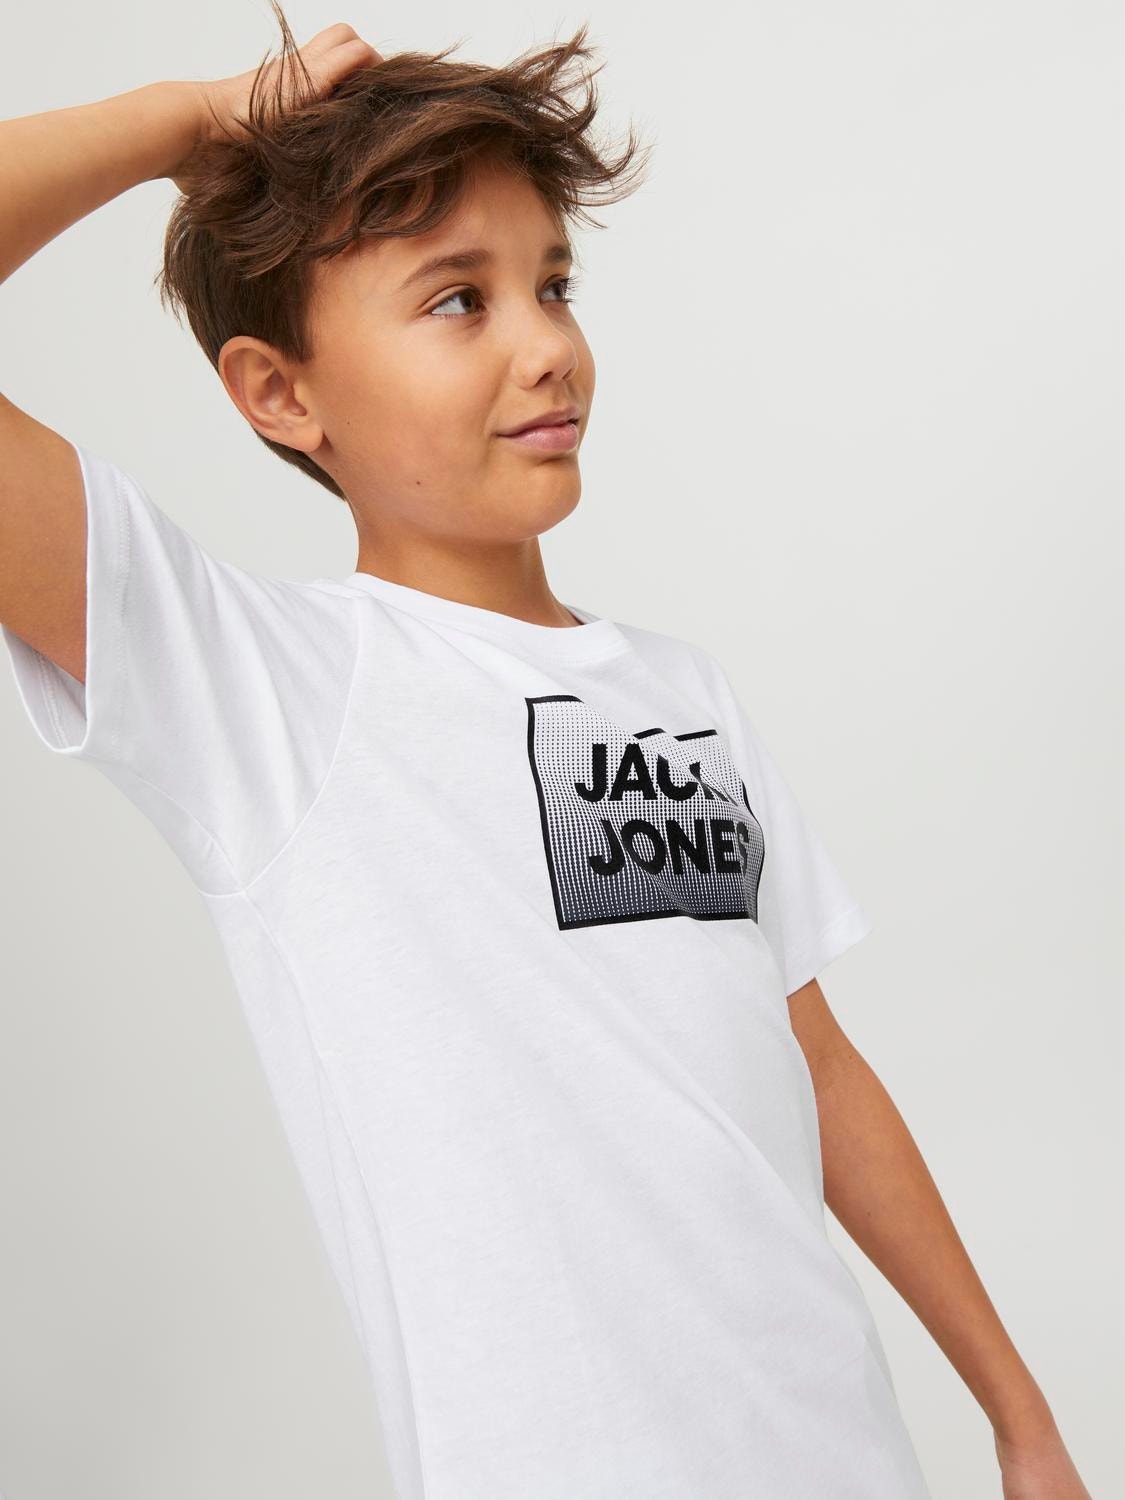 Jack & Jones Gedruckt T-shirt Für jungs -White - 12249633